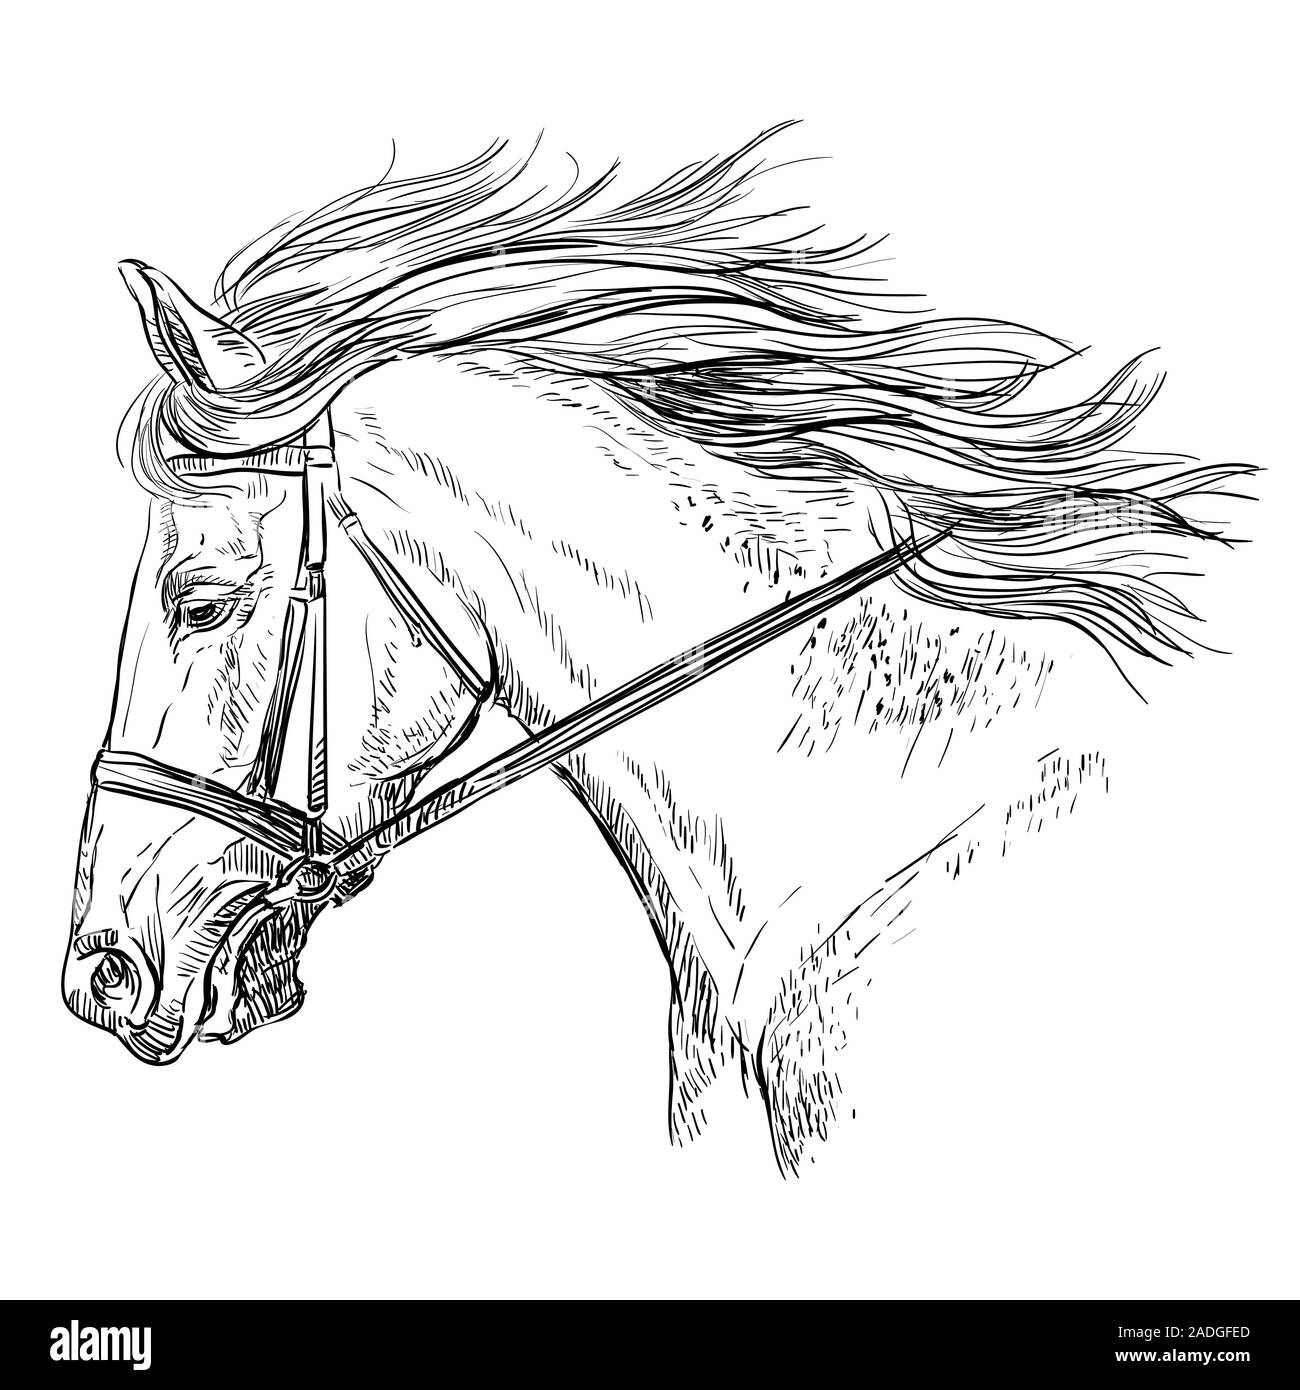 Horse Portrait mit Zaumzeug. Schönes Pferd Kopf mit langer Mähne im Profil in schwarzer Farbe auf weißem Hintergrund. Vektor Handzeichnung illustrati Stock Vektor